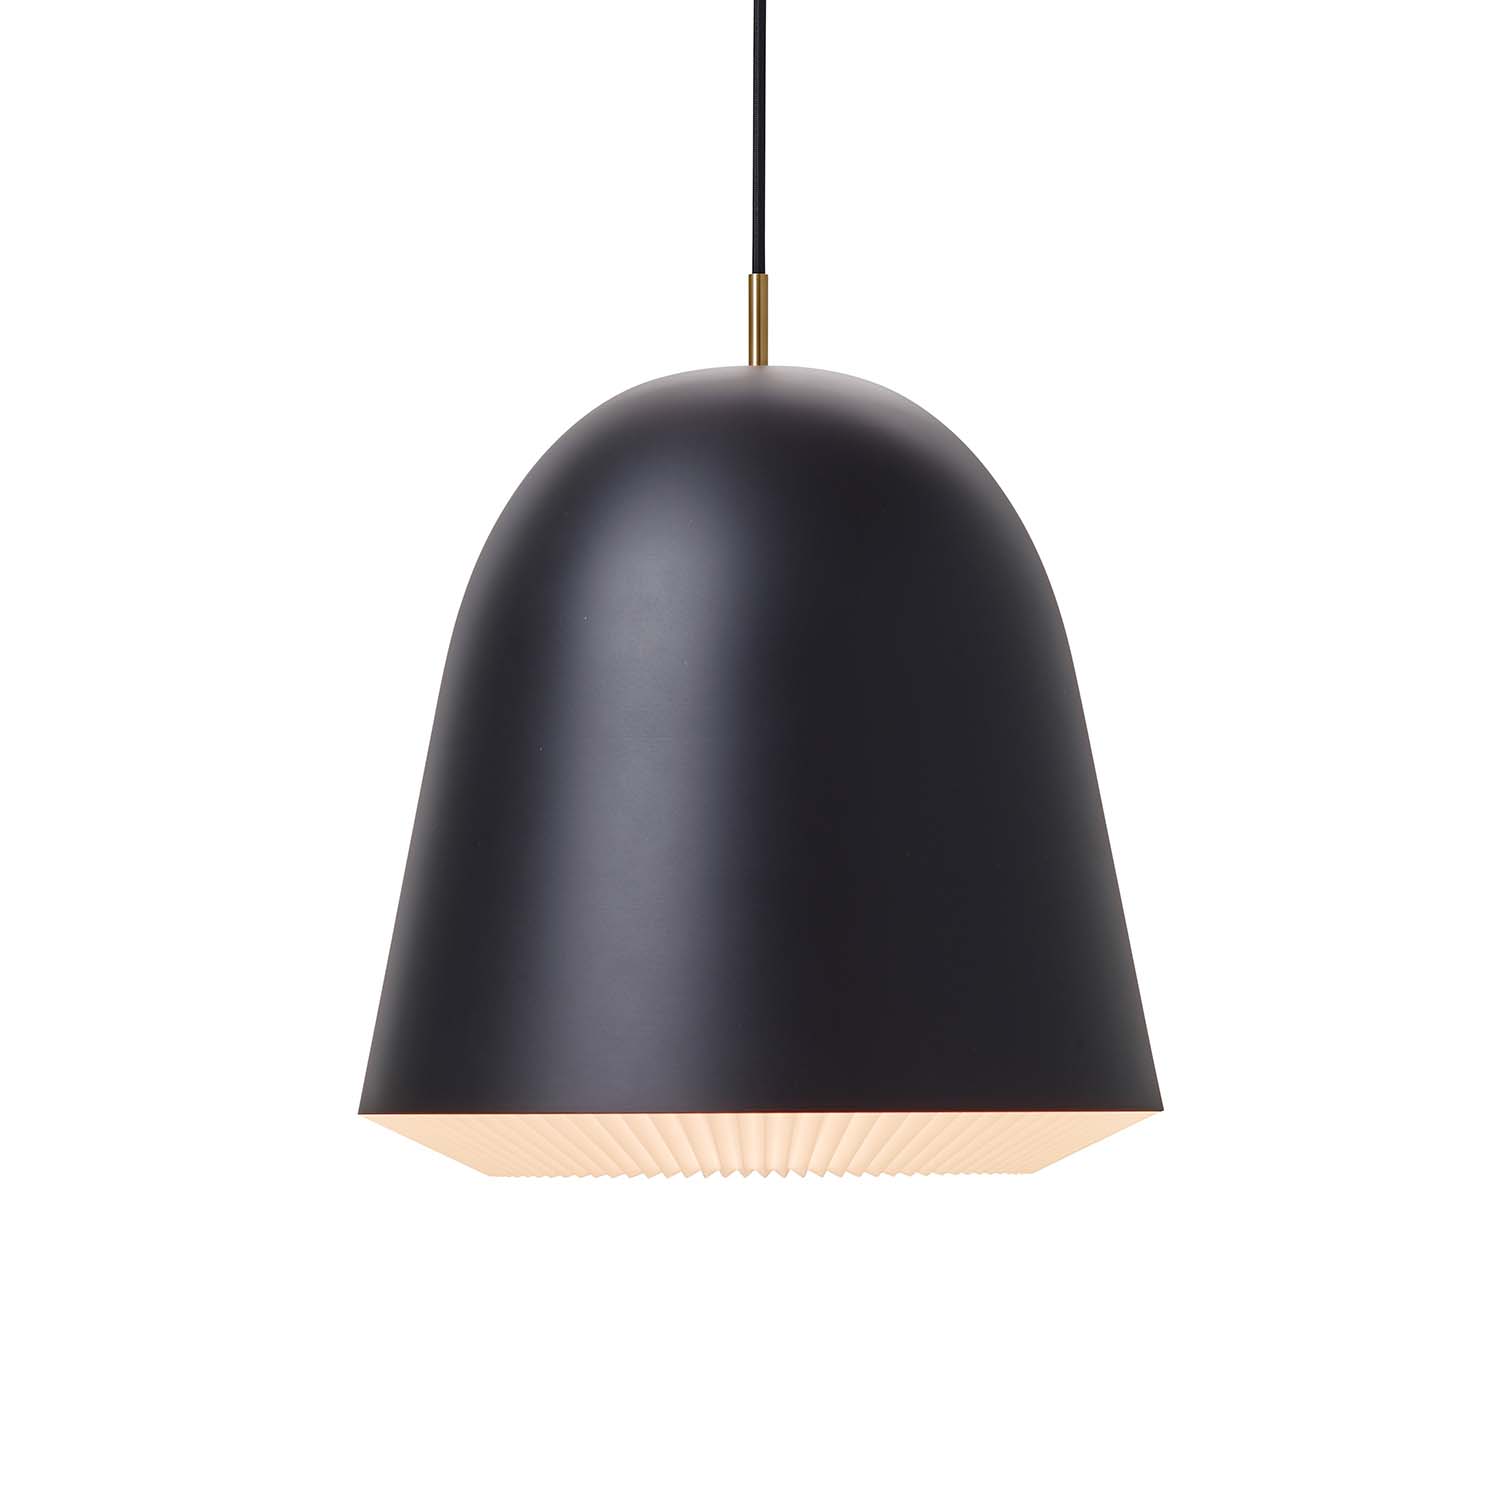 CACHÉ - Designer black pendant light for modern bedroom